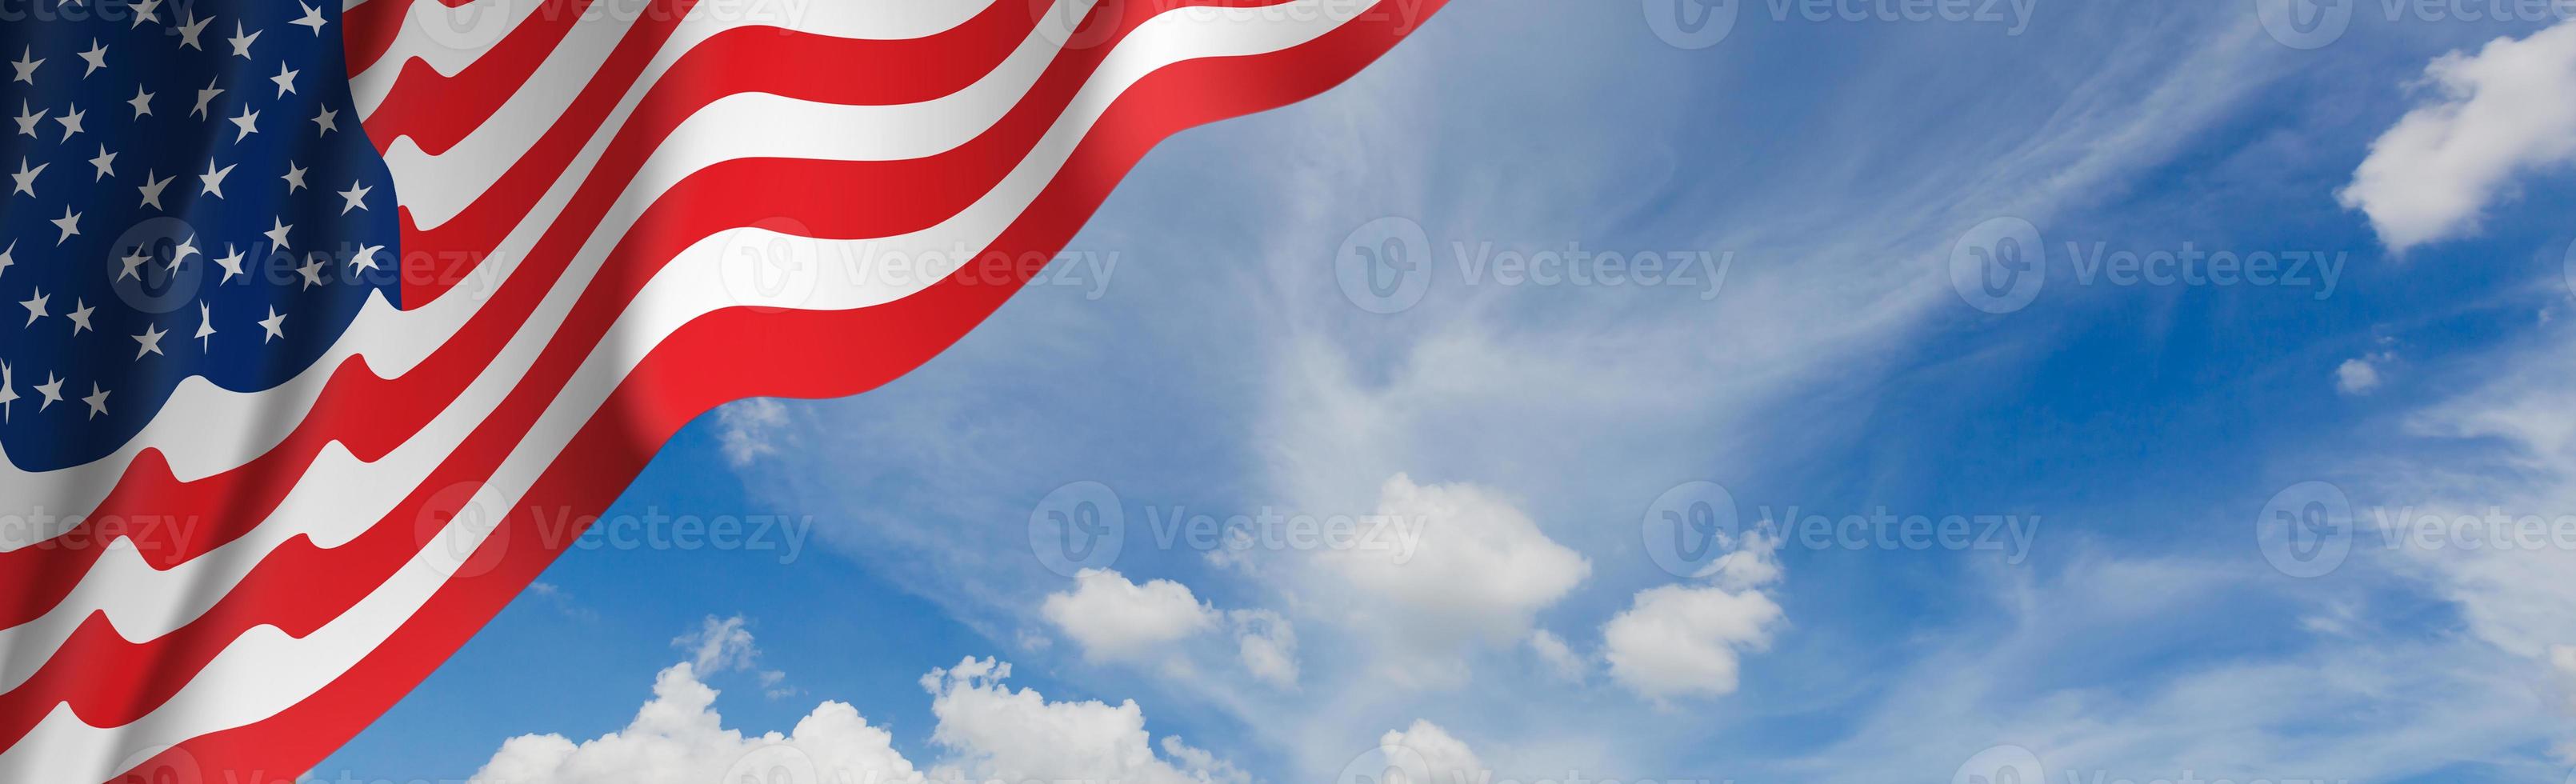 uns amerikanische Flagge foto